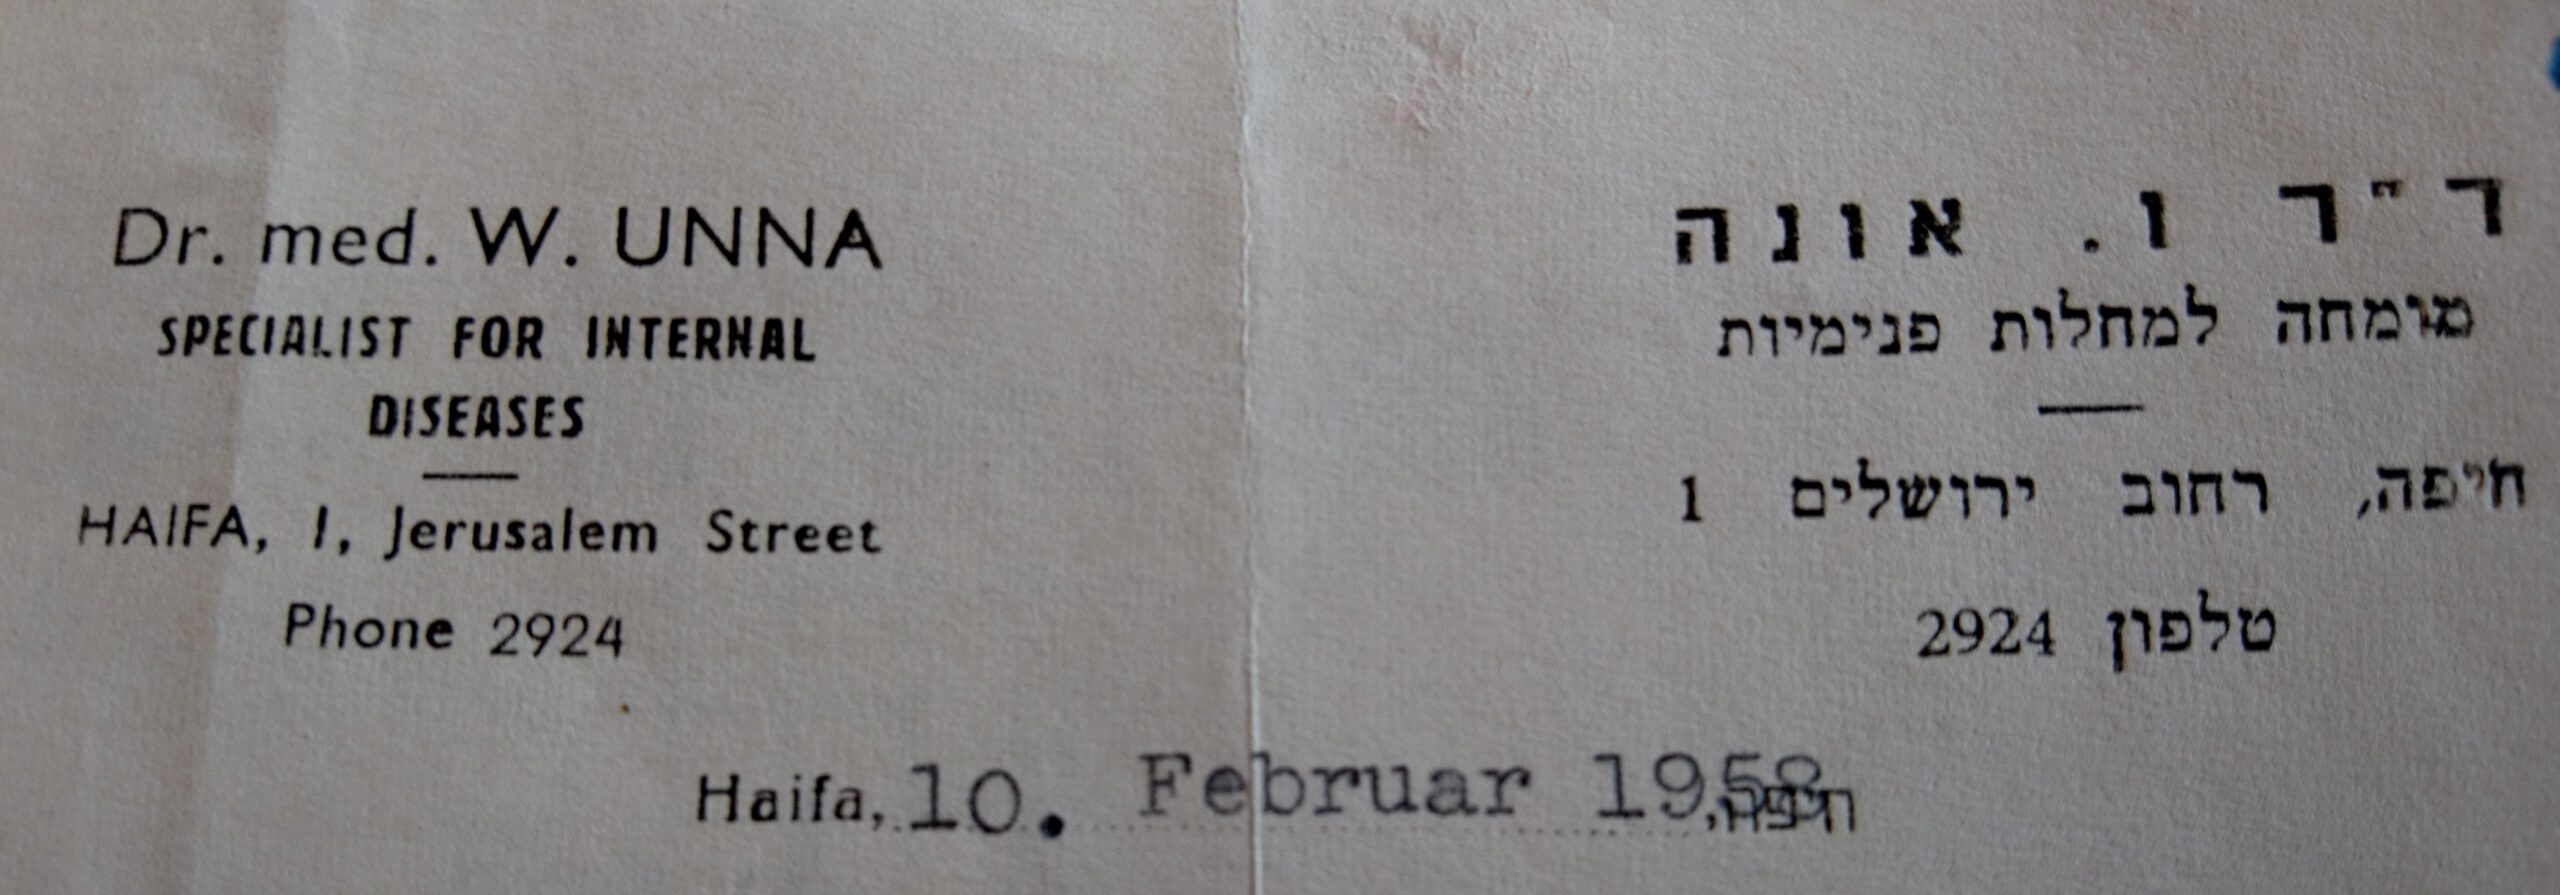 William Unnas Praxisadresse 1958, Quelle Entschädigungsbehörde Berlin